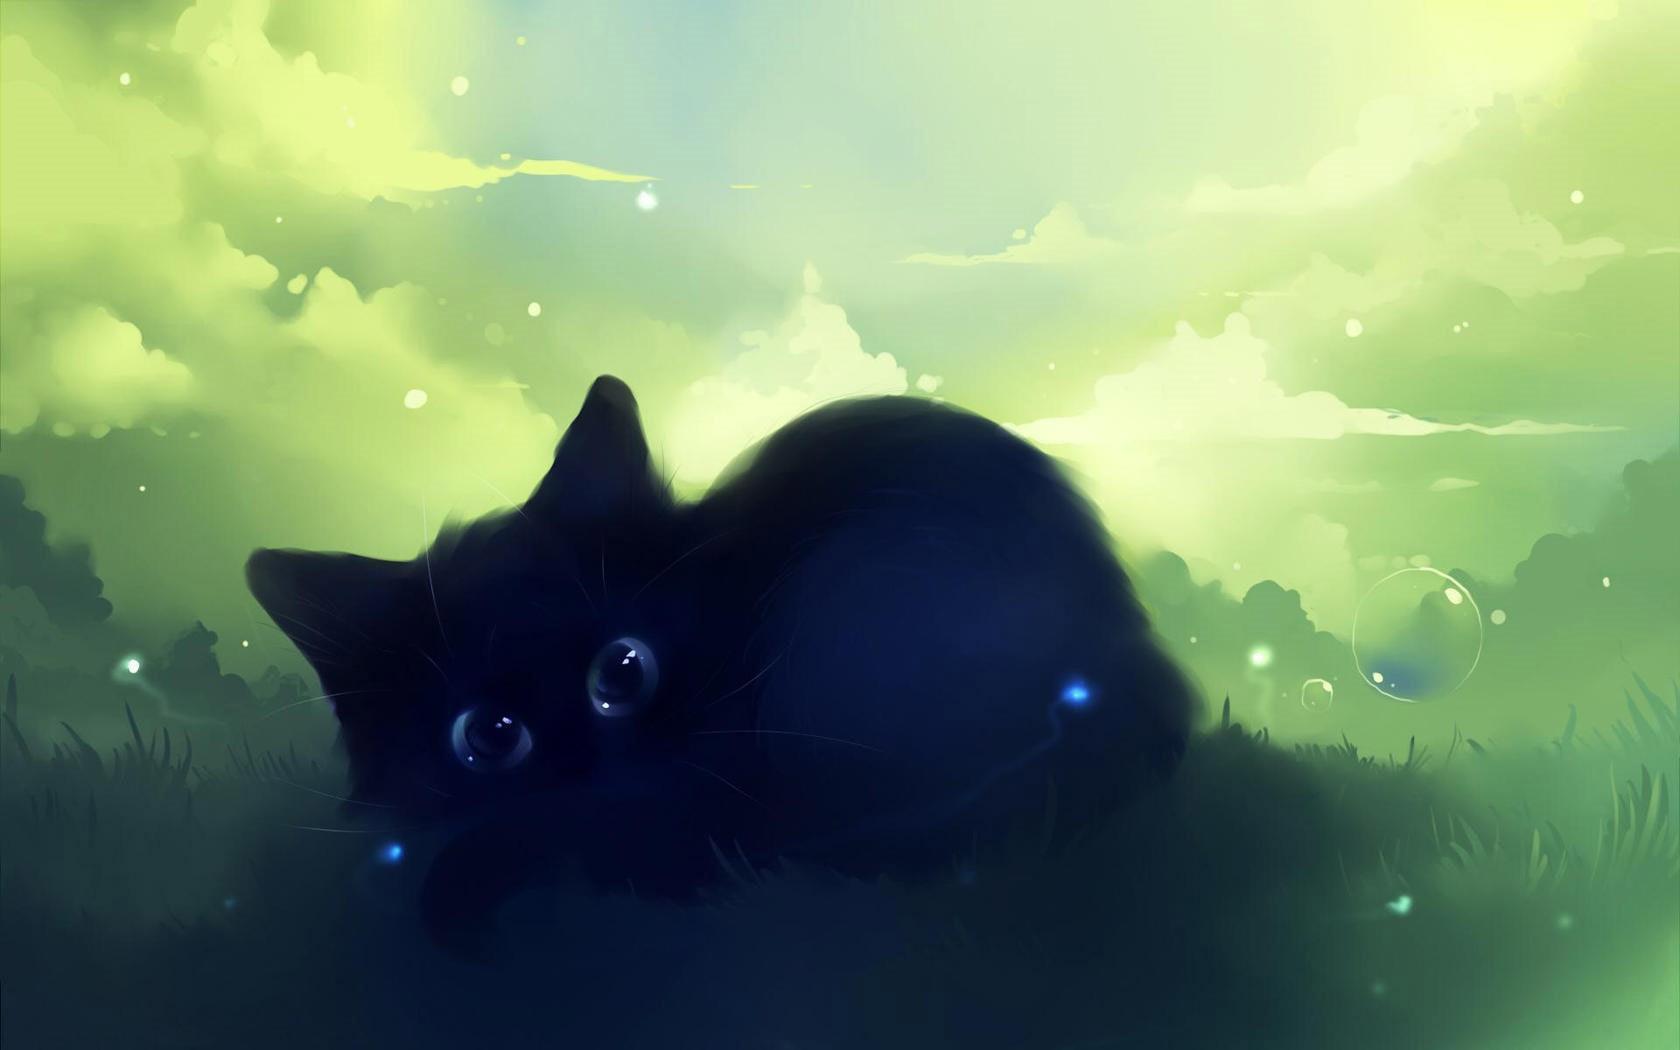 Kawaii Black Cat Wallpapers - Top Free Kawaii Black Cat Backgrounds